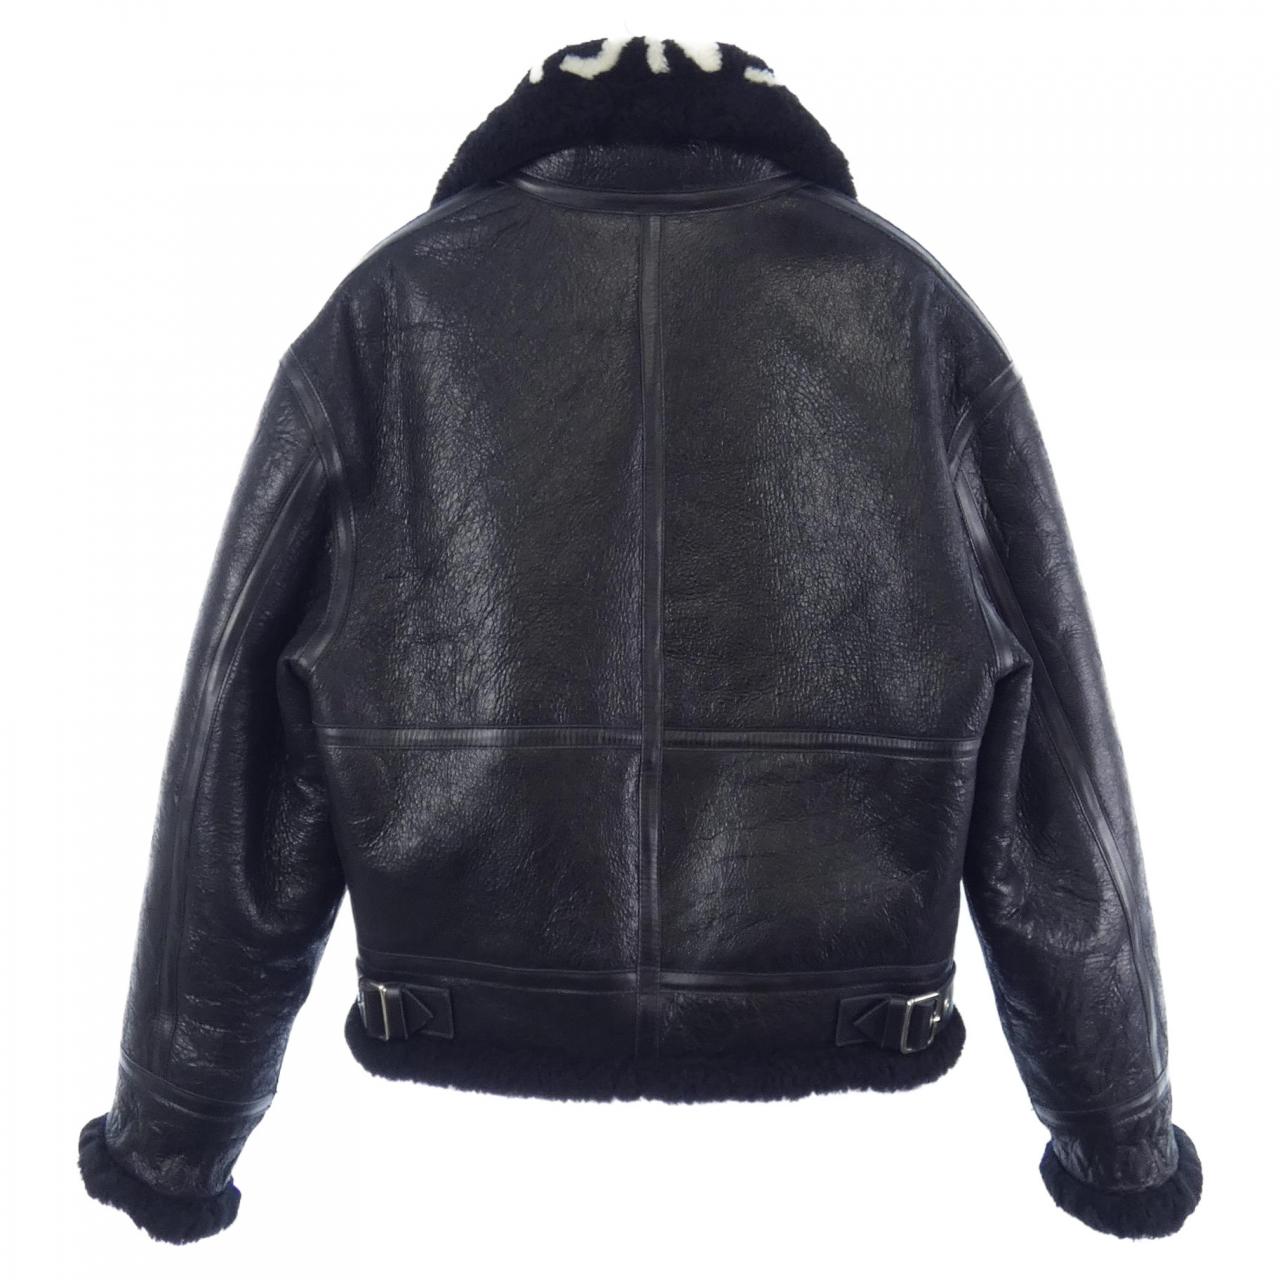 Authentic BALENCIAGA Leather jacket #241-002-482-8333